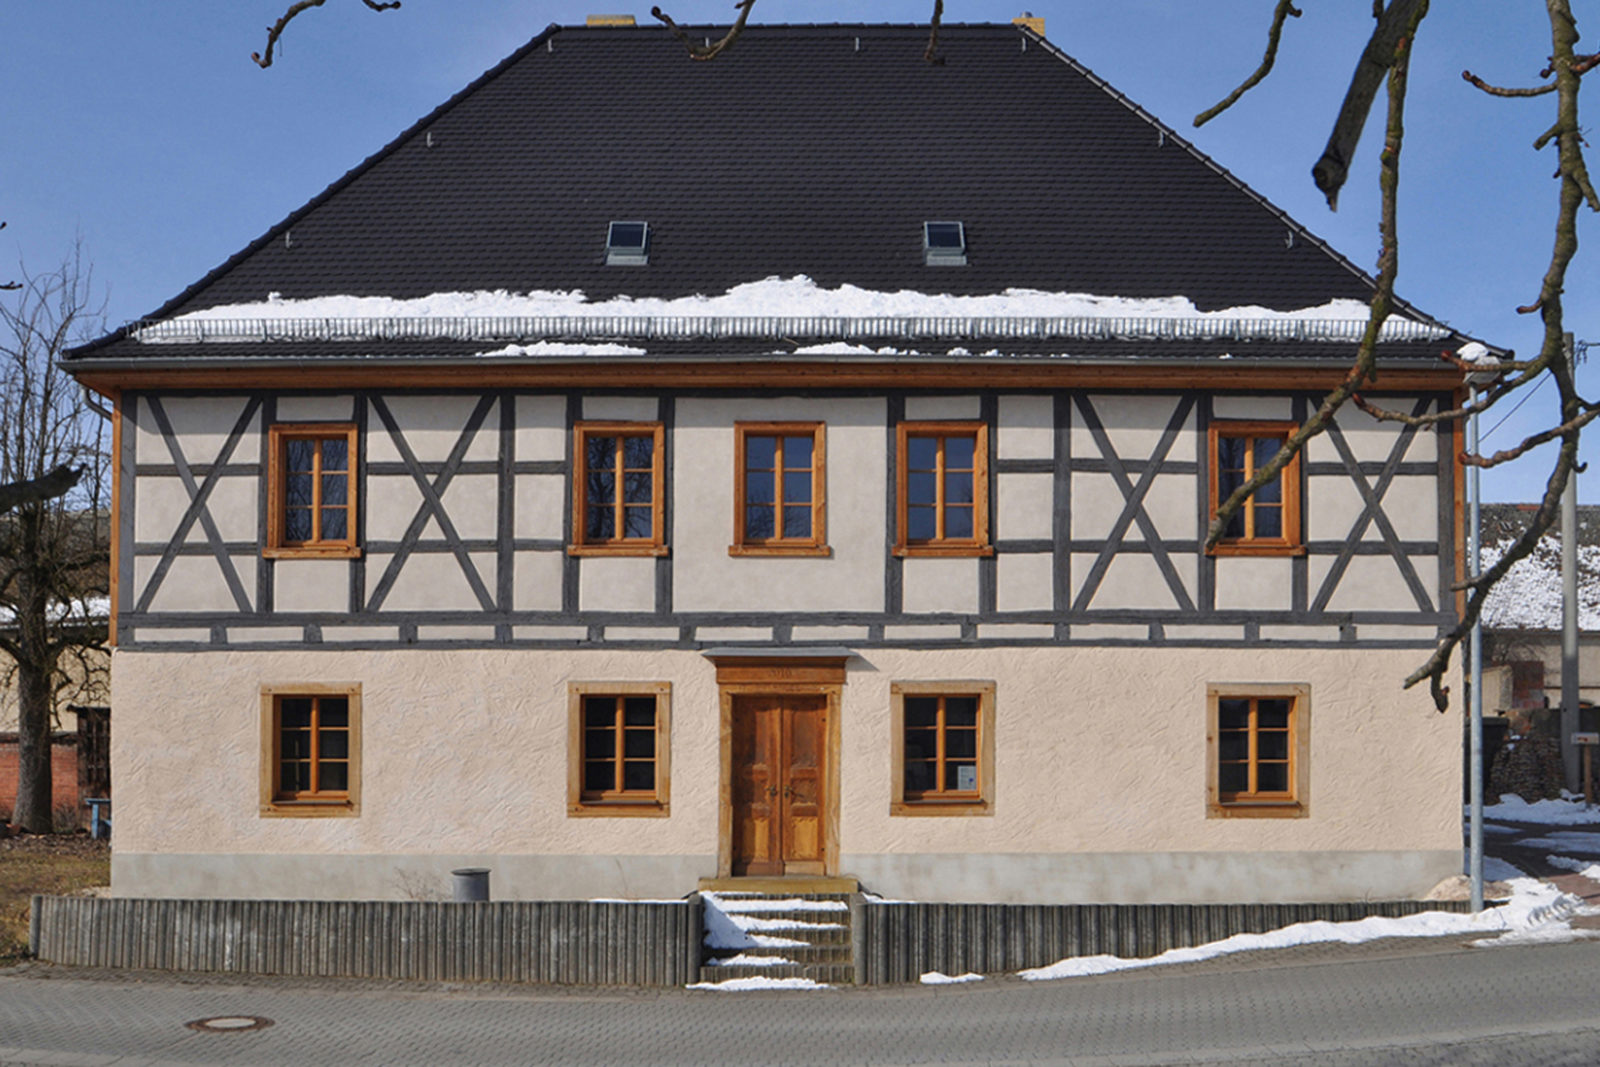 Umbau und Sanierung Baudenkmal Rentmeisterhaus in Püchau - Blick von der Straße